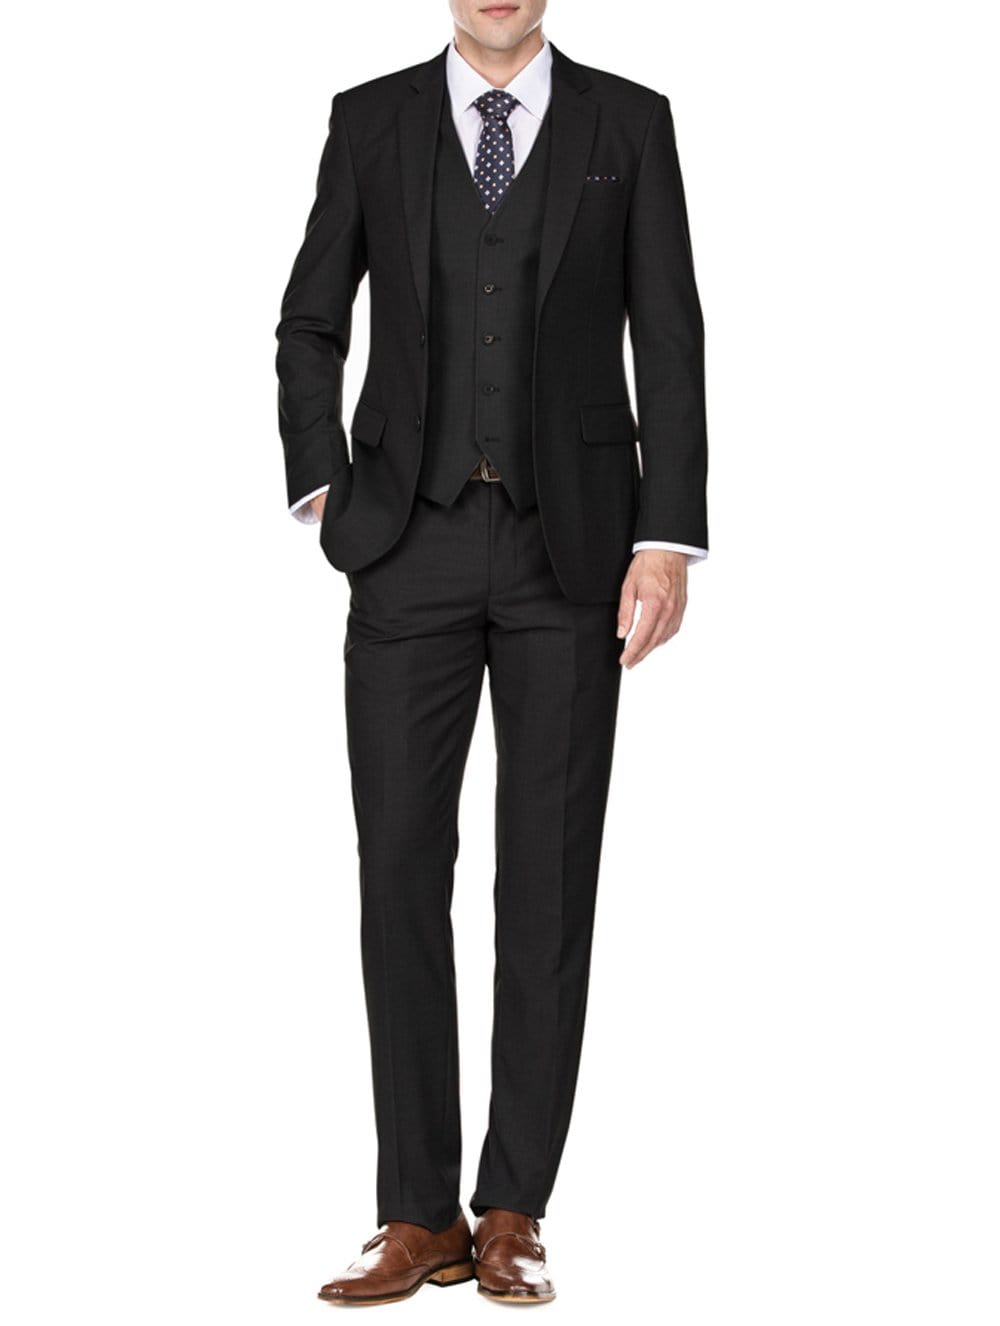 Men's Signature 3-Piece Slim Fit Suits (Black, Navy, Charcoal)